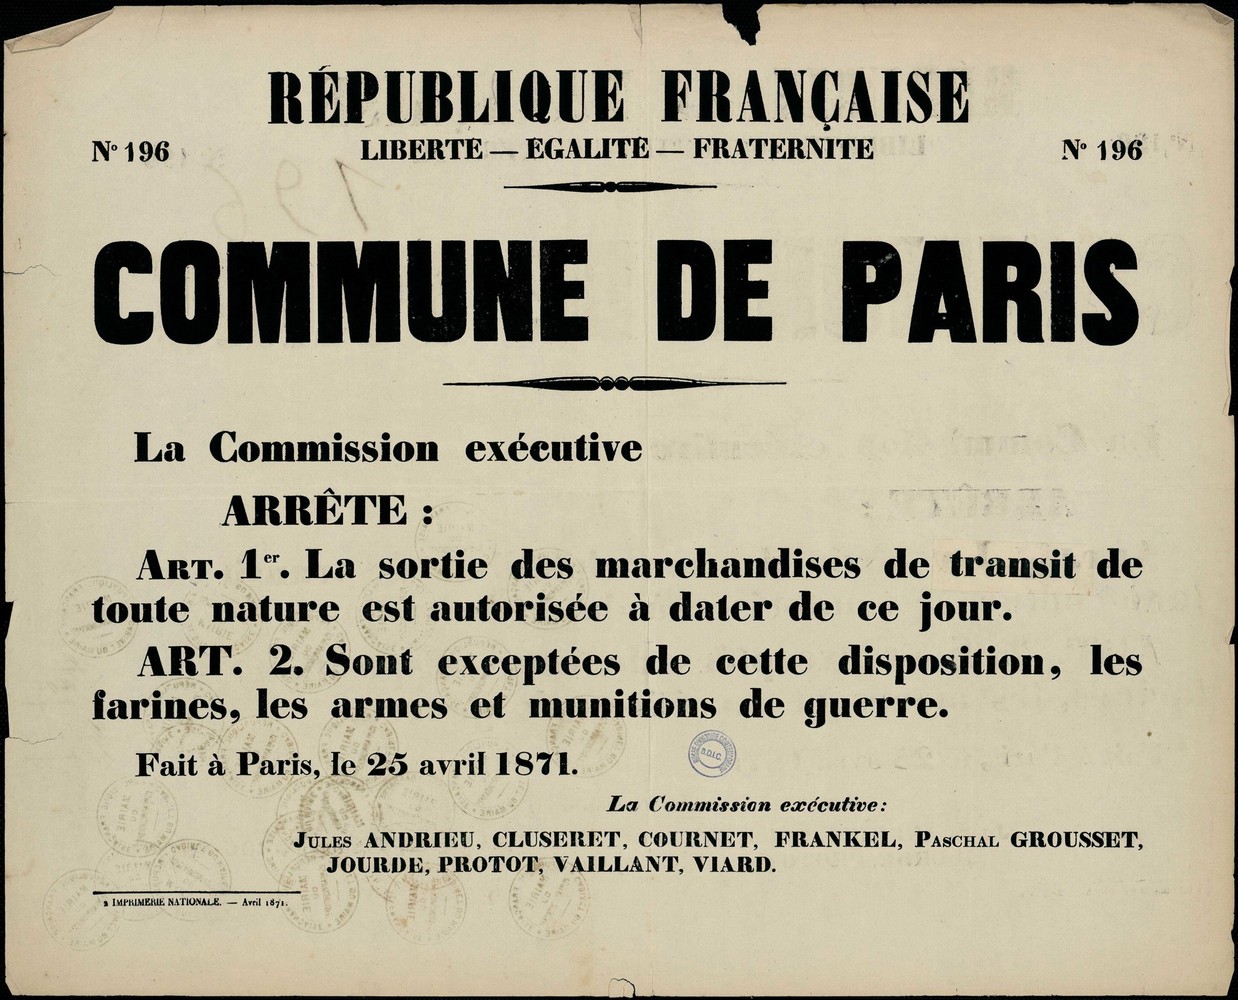 Affiche de la Commune de Paris N° 196 du 25 avril 1871 (source : La Contemporaine – Nanterre / argonnaute.parisnanterre.fr)